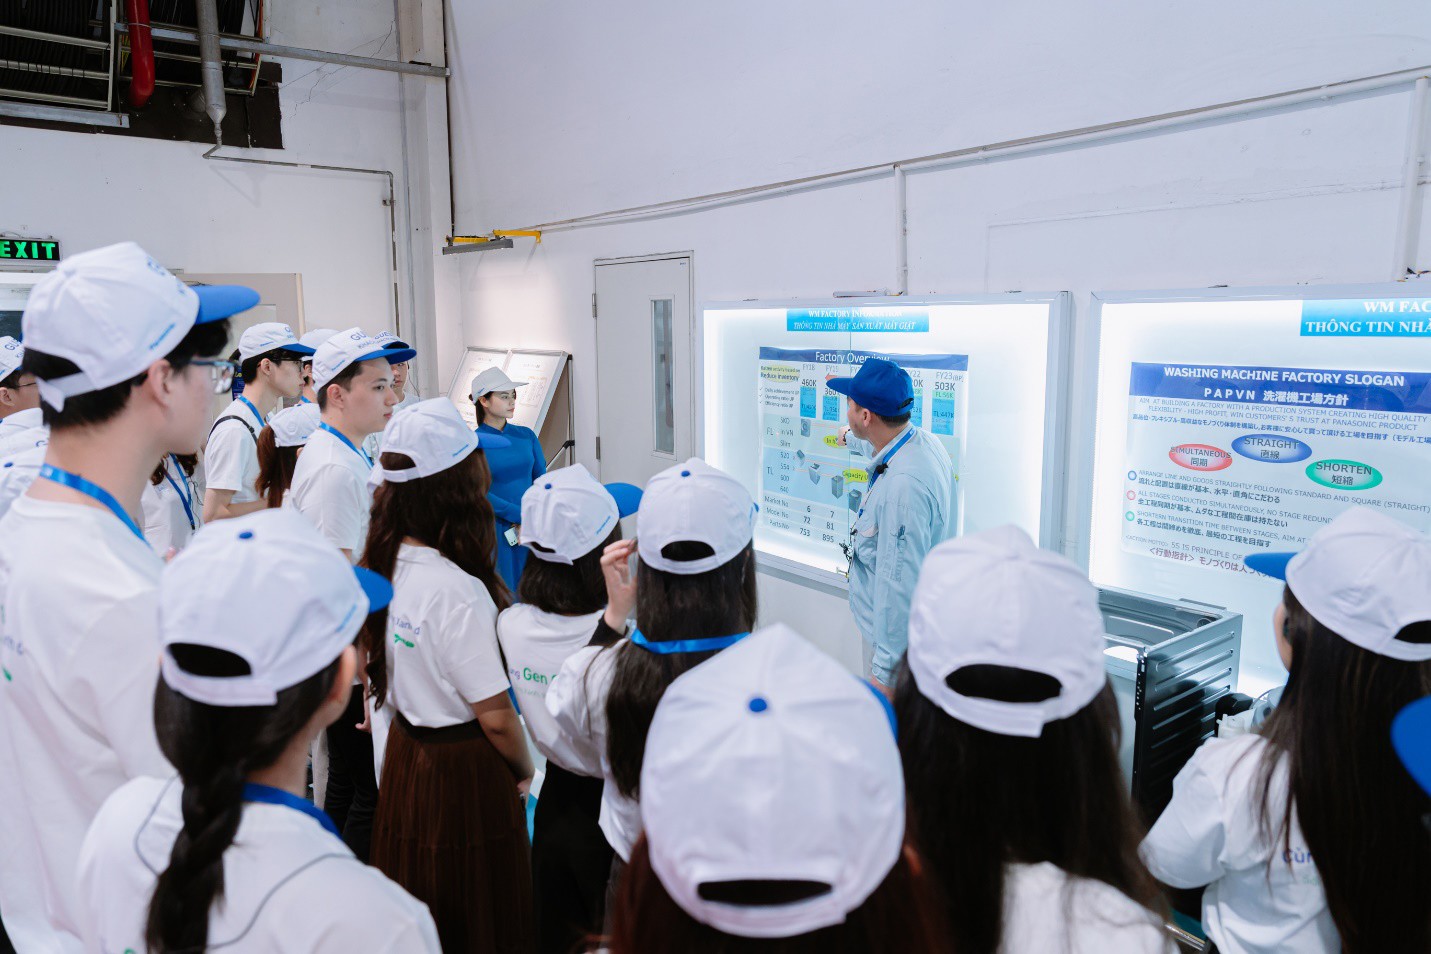 Chuyến thăm quan tại nhà máy Panasonic truyền cảm hứng các bạn trẻ về các giải pháp xanh, bền vững. Nguồn ảnh: Panasonic